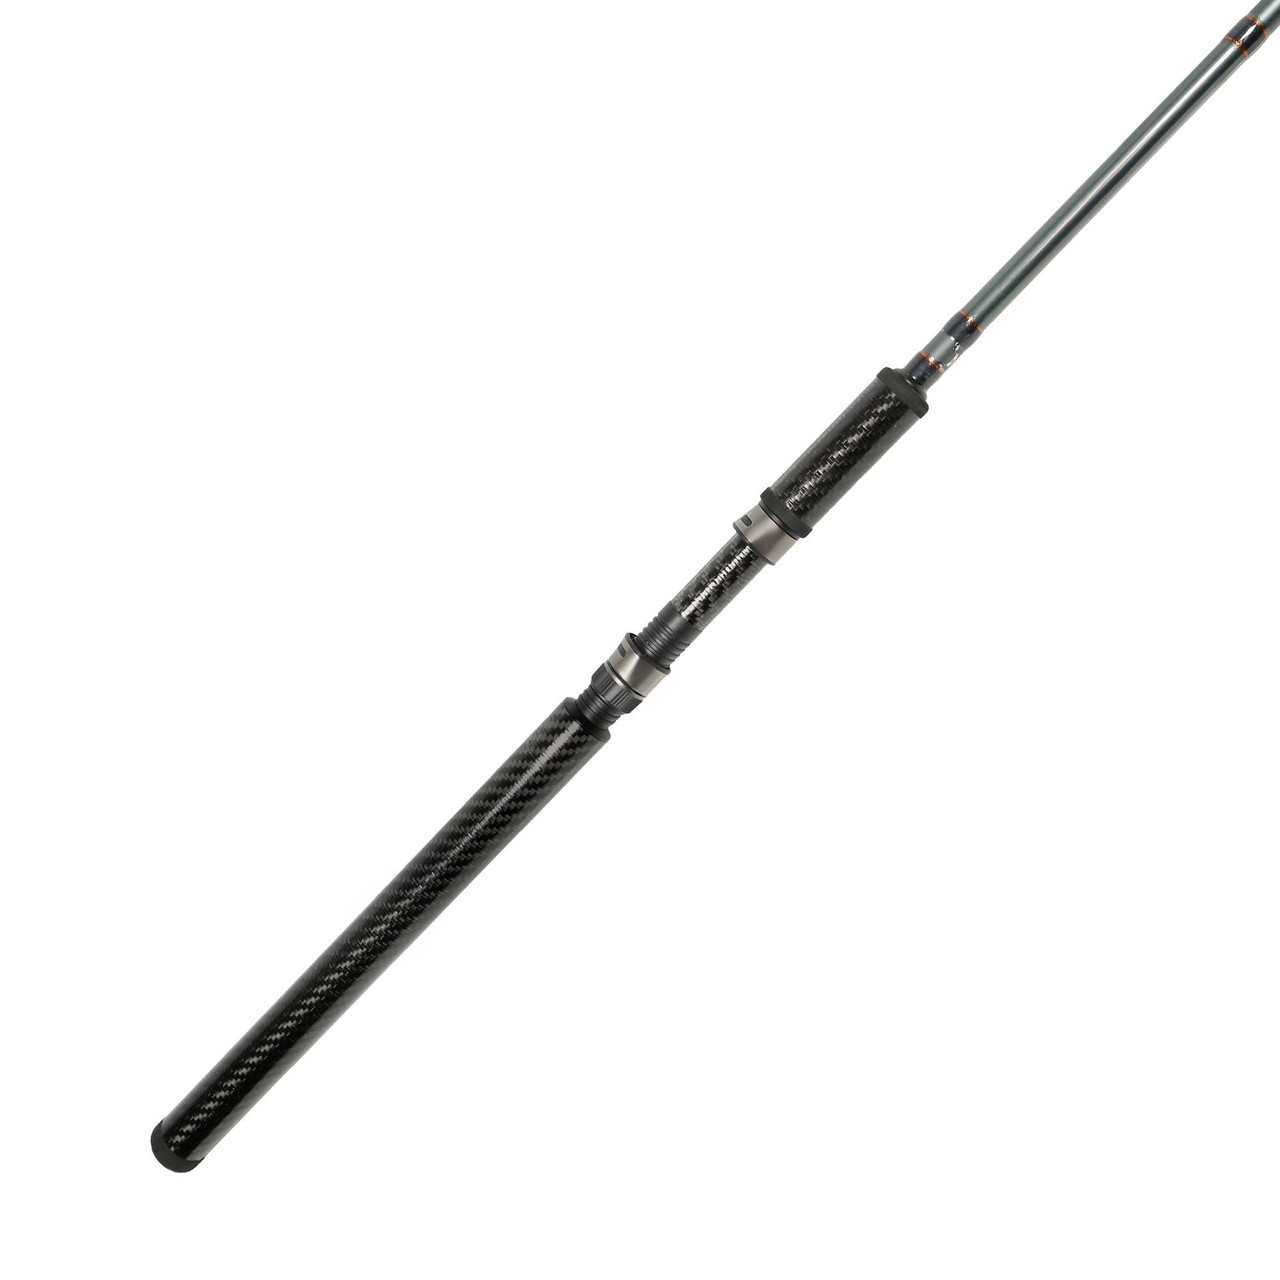 Sensation 'Carp Trend' Rod with Okuma 'Carbonite' Reel - For